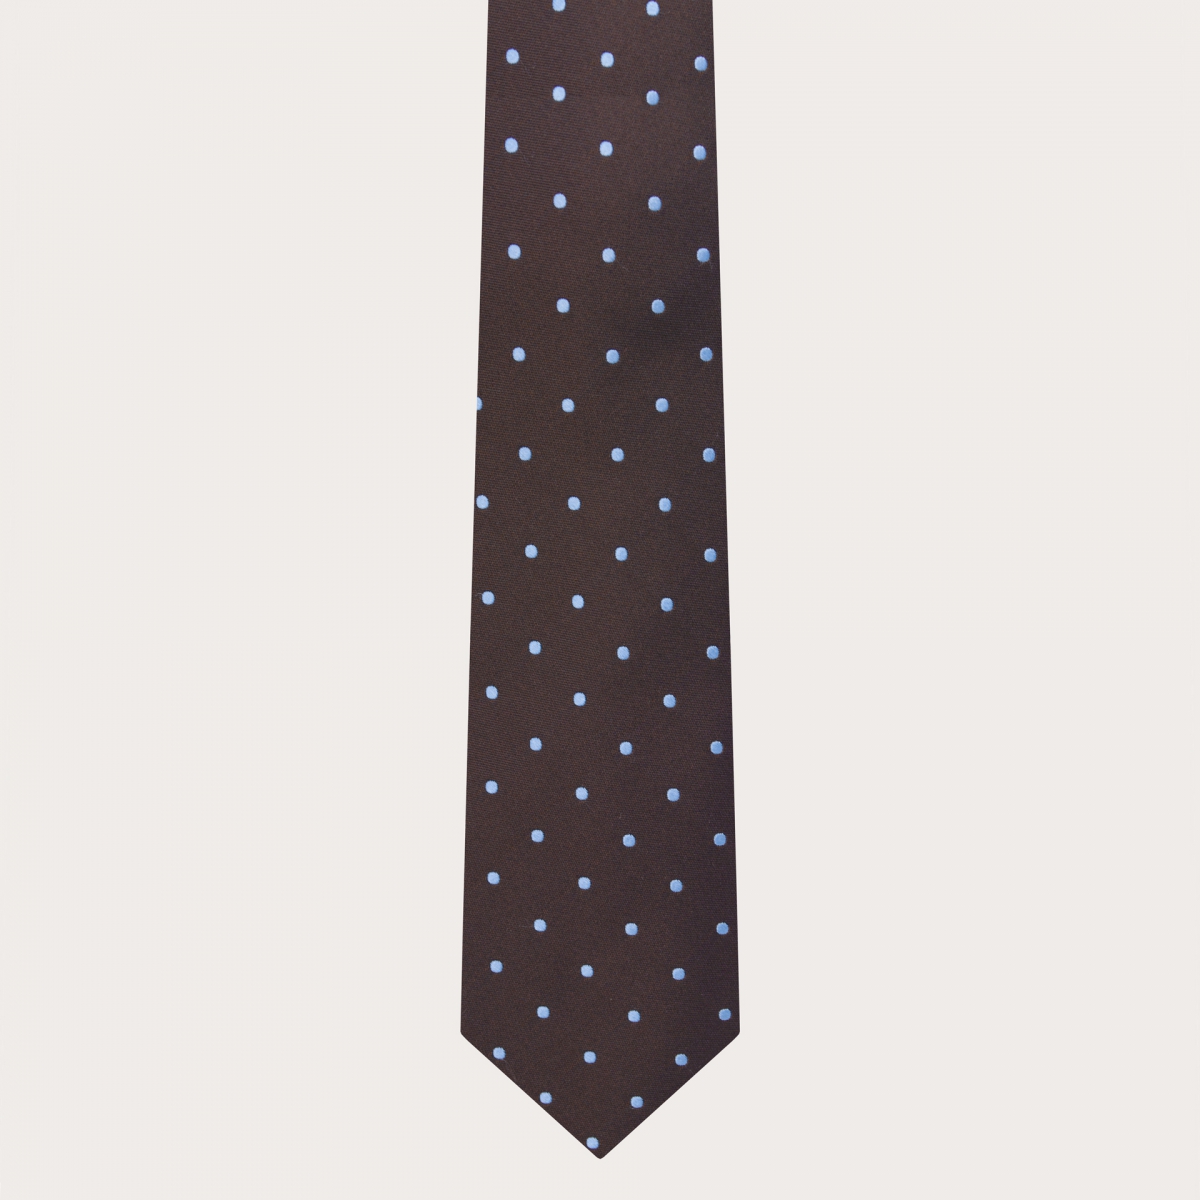 BRUCLE Elegante cravatta con motivo puntaspillo marrone e azzurro